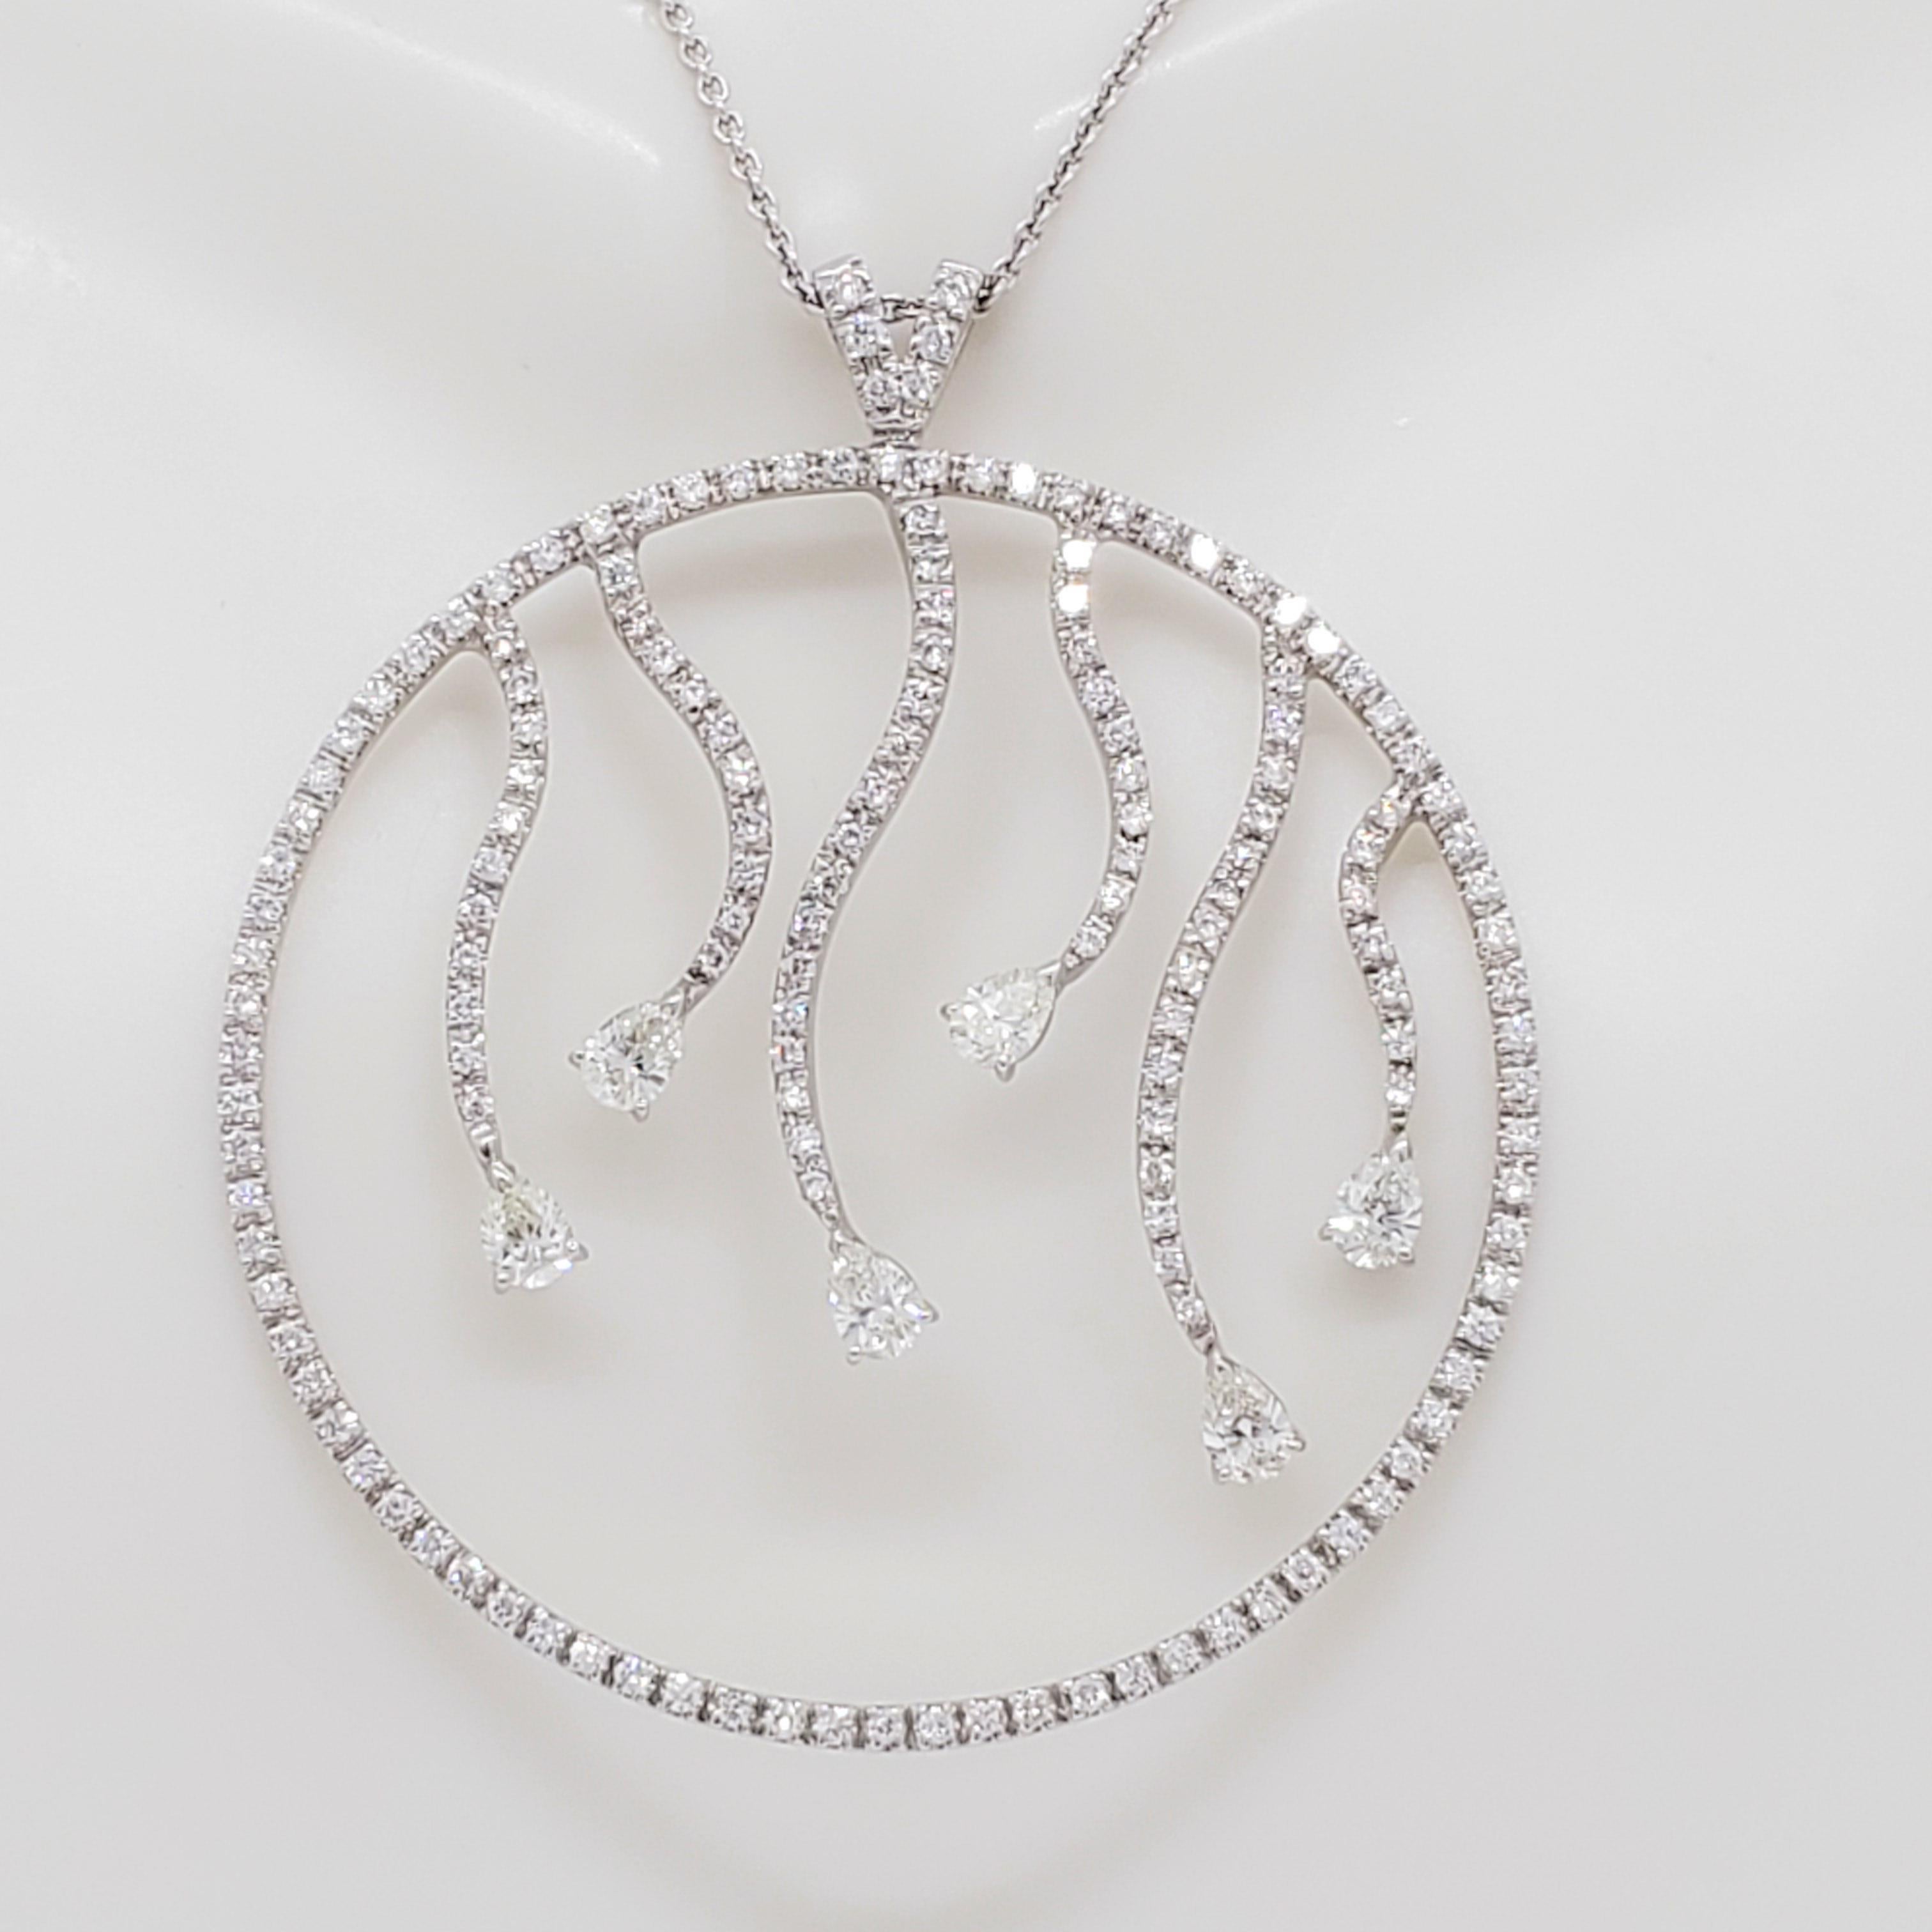 Magnifique collier pendentif de ZYDO avec 3,00 ct. de diamants de bonne qualité, blancs et brillants de forme poire et ronds.  Monture faite à la main en or blanc 18 carats.  La longueur est de 18